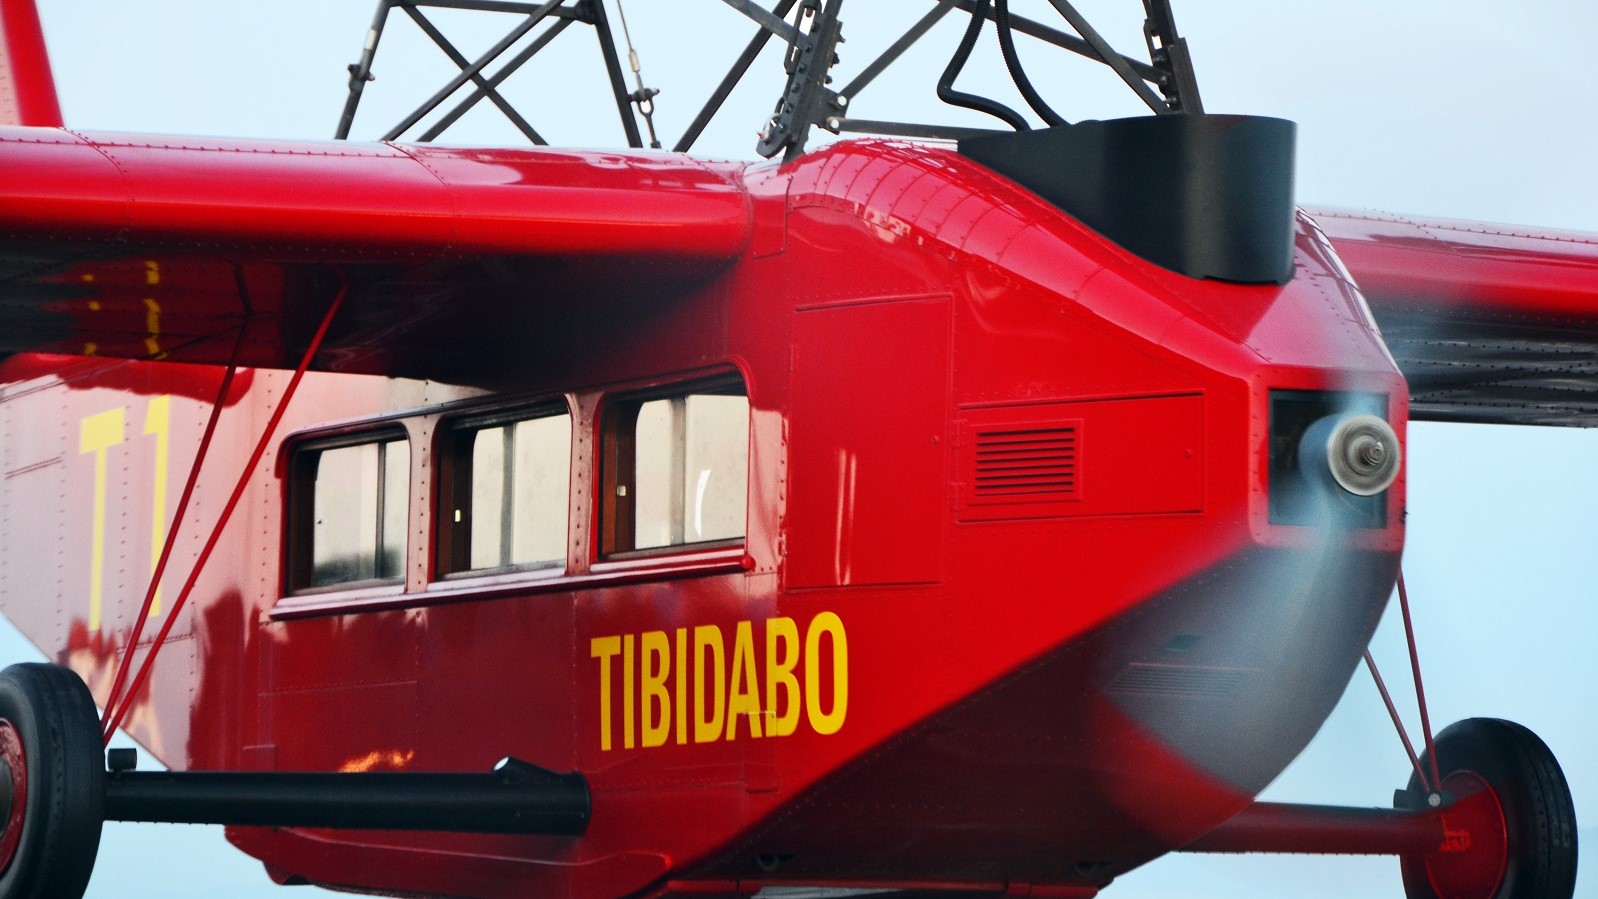 Parc d'atraccions Tibidabo Parque de atracciones Tibidabo Tibidabo Amusement Park